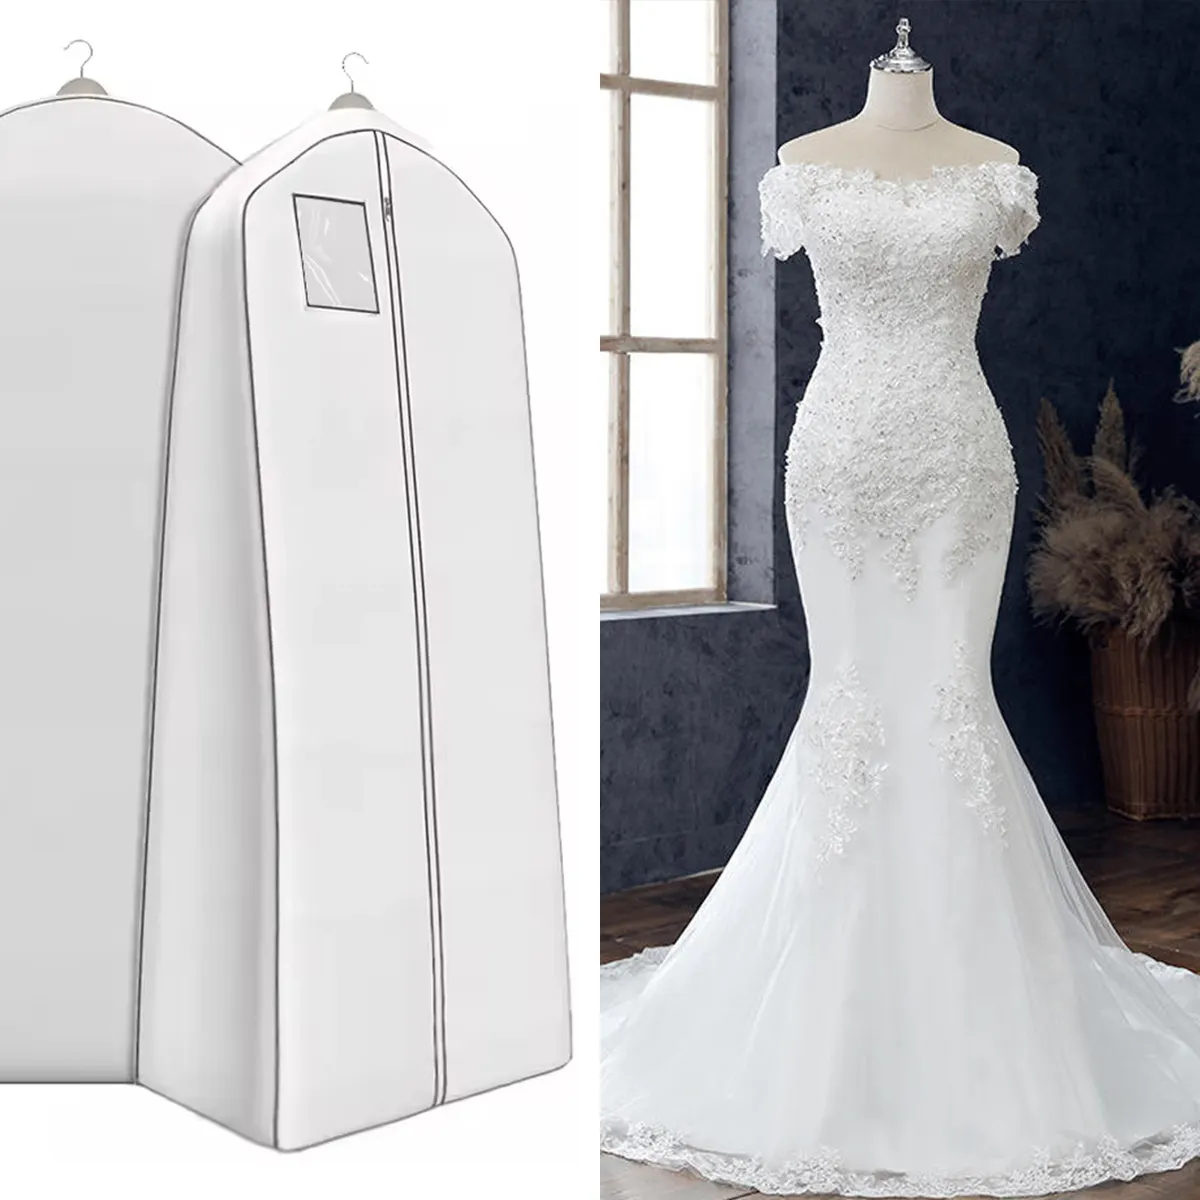 Çevre dostu toz geçirmez giysi toz torbaları katlanabilir özel logo düğün elbisesi olmayan dokuma konfeksiyon suit kapak çanta